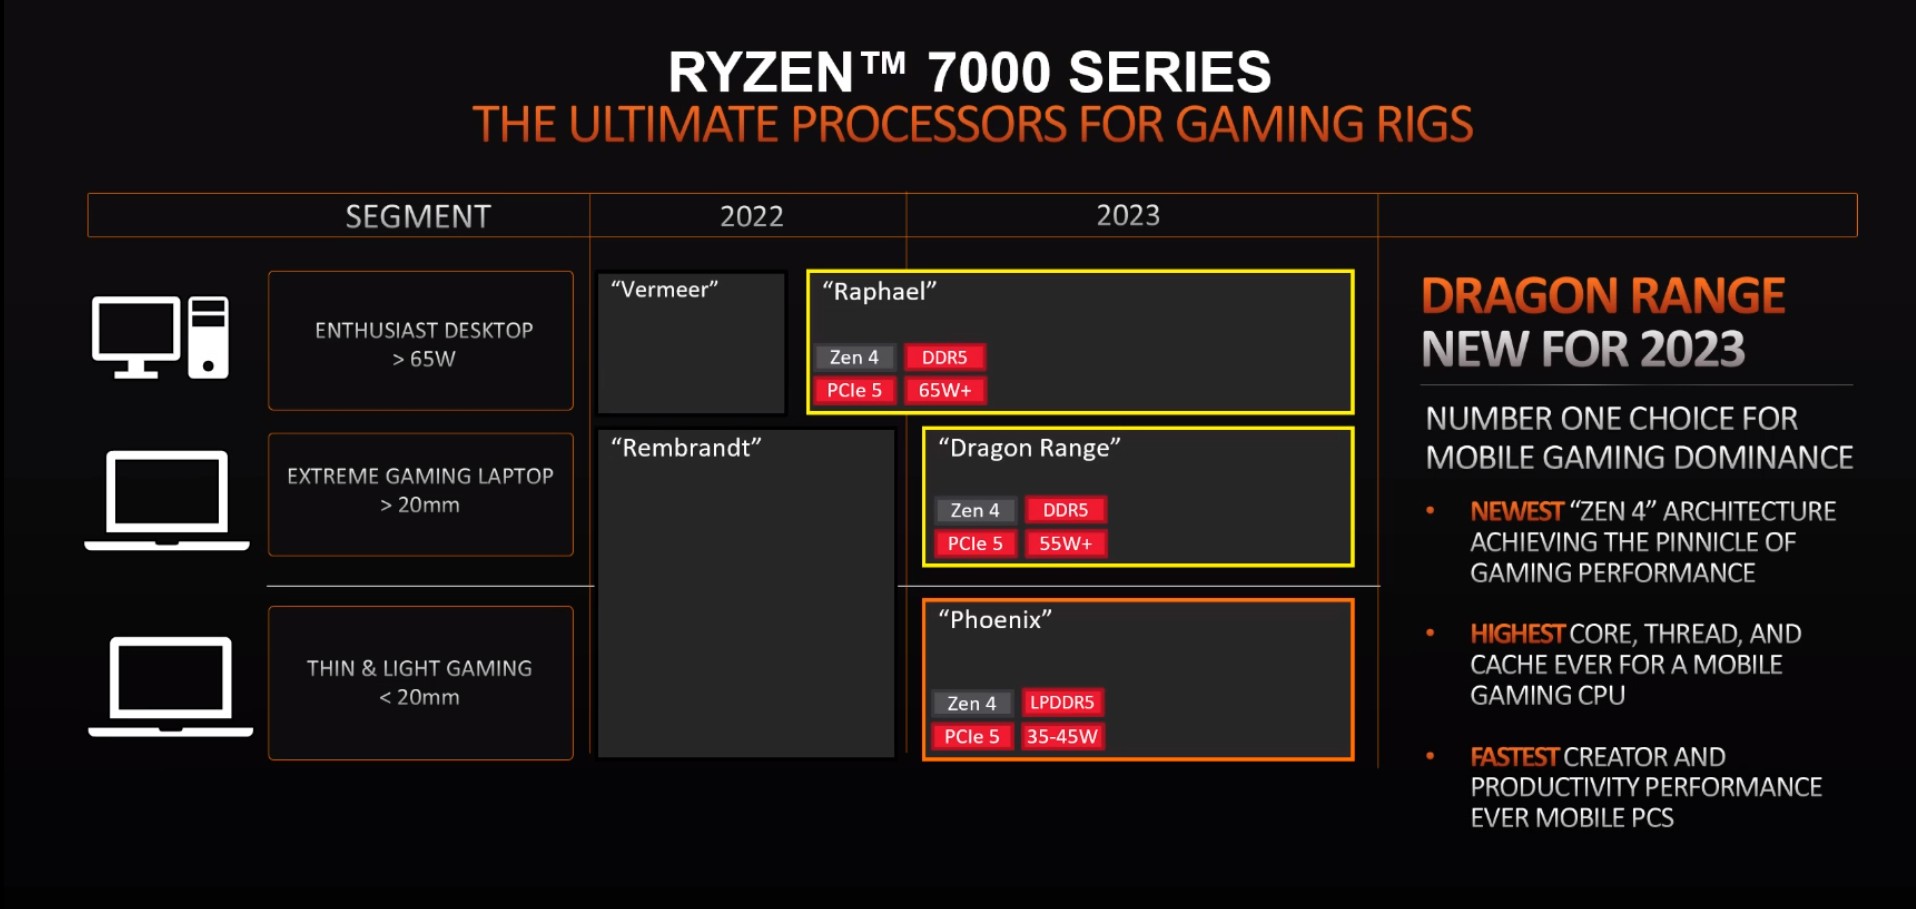 اطلاعاتی از پردازنده های لپتاپ گیمینگ Dragon Range شرکت AMD منتشر شد